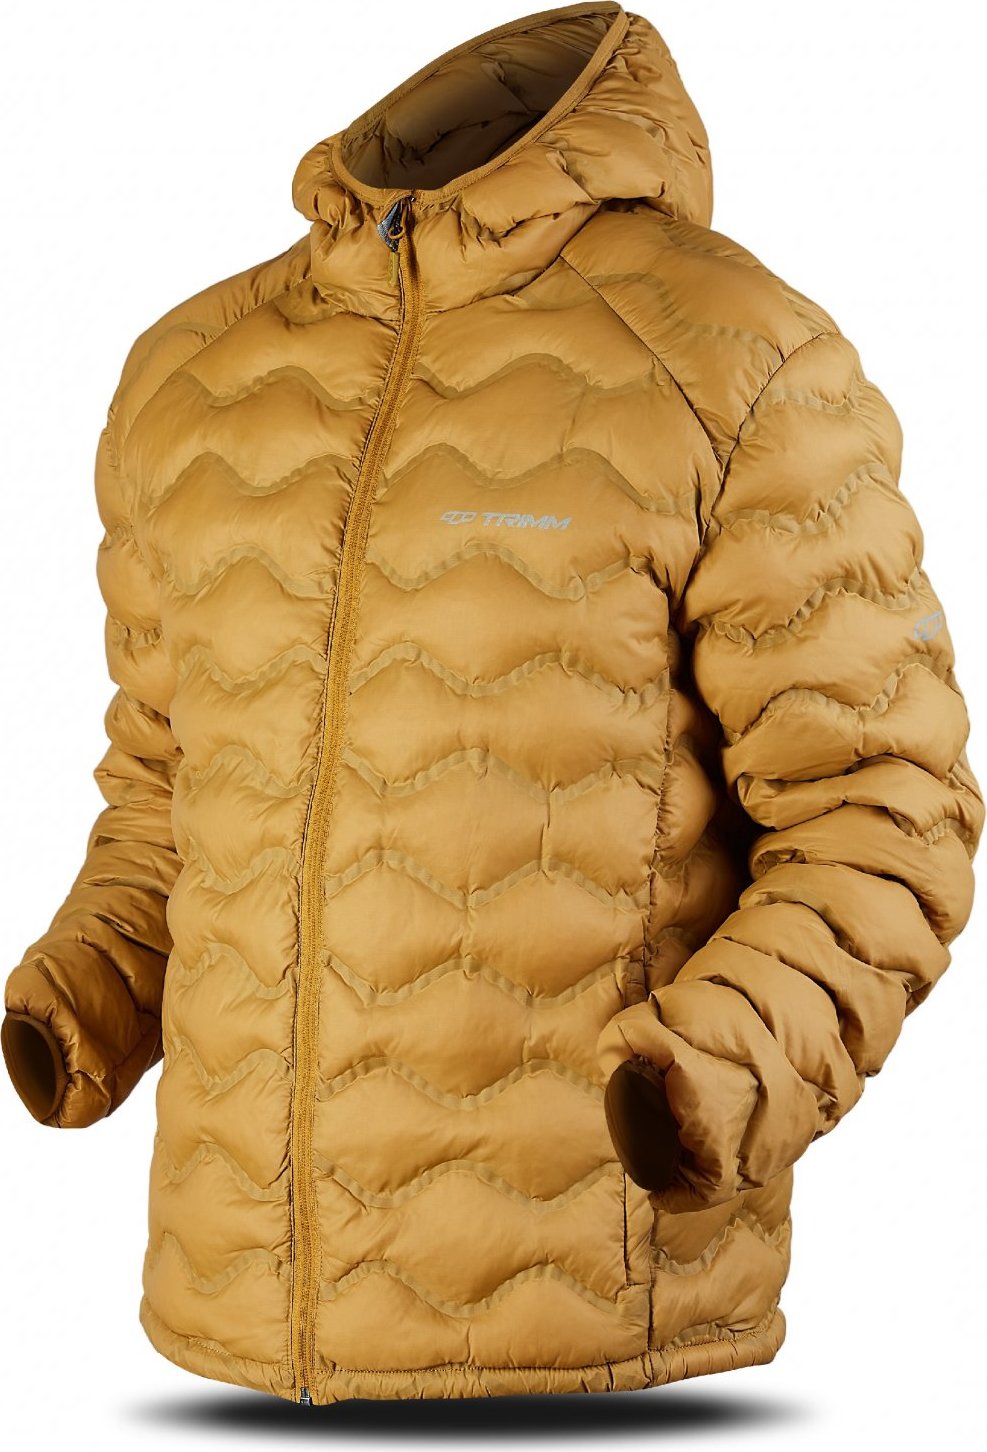 Pánská zimní bunda TRIMM Trock zlatá Velikost: L, Barva: golden/ light grey